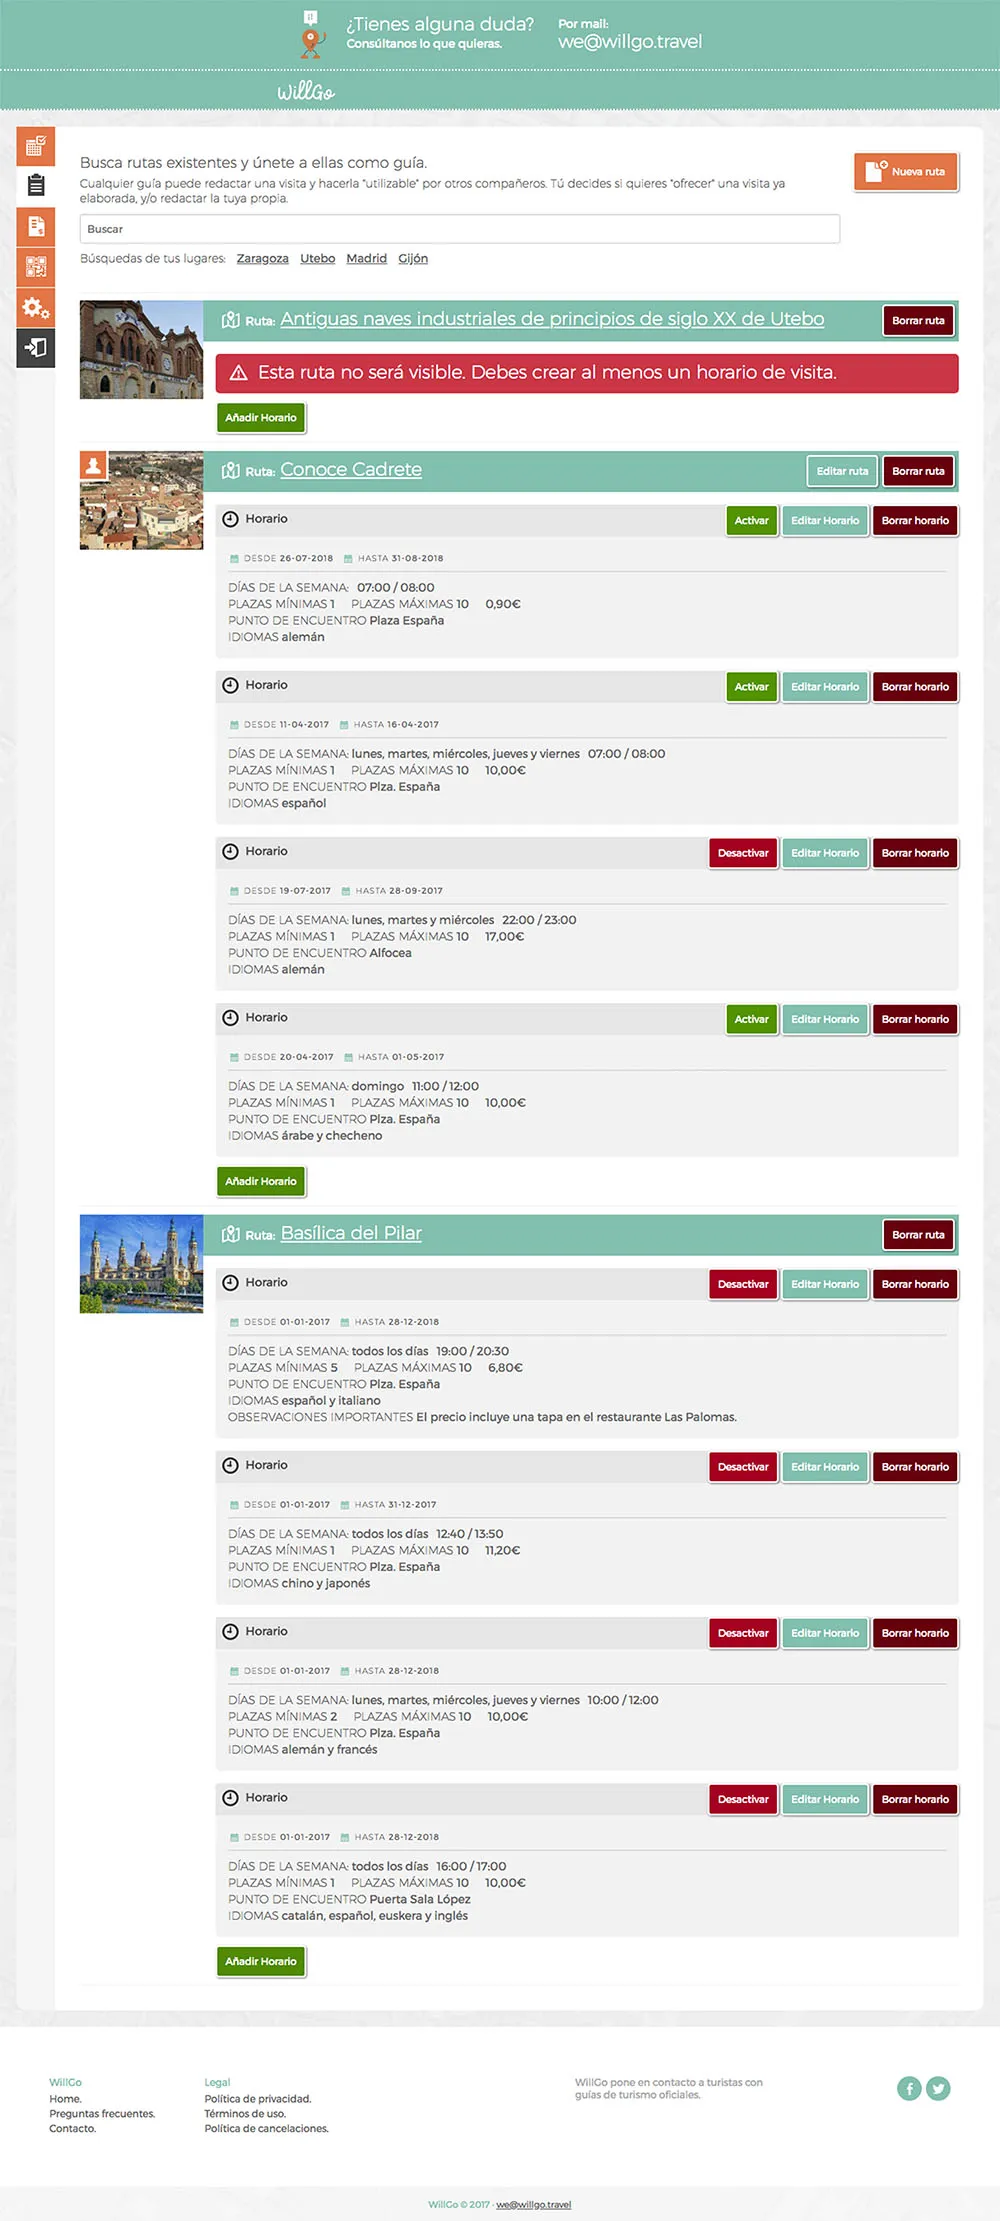 Diseño website, frontend y backend en proyecto online de turismo en Zaragoza.